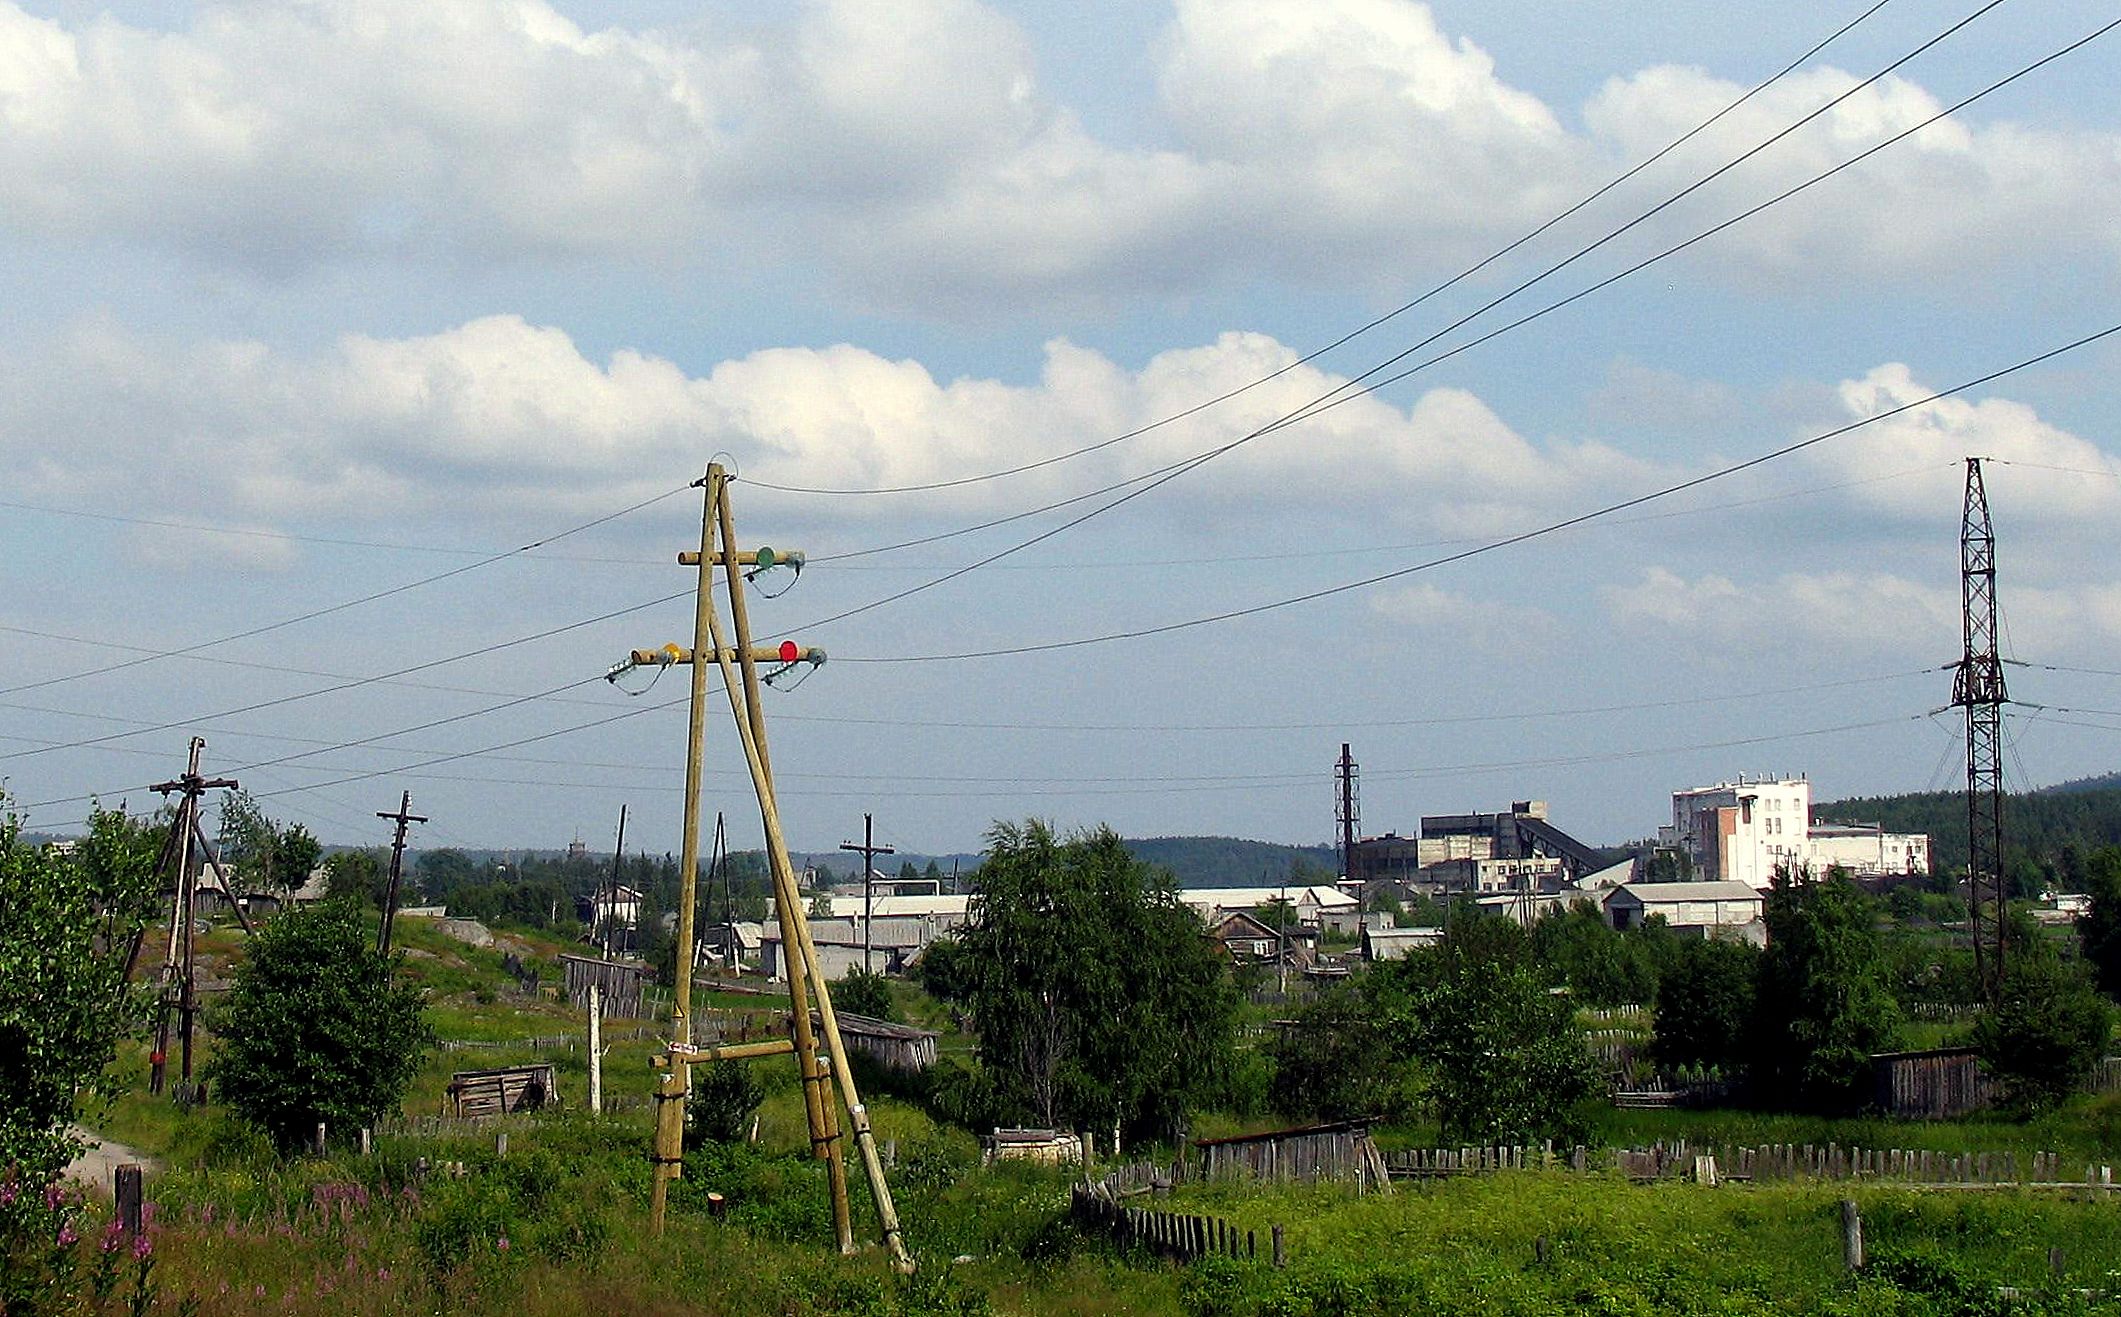 Прионежская сетевая компания предупреждает потребителей об отключениях электроэнергии с связи с плановыми ремонтами энергообъектов.